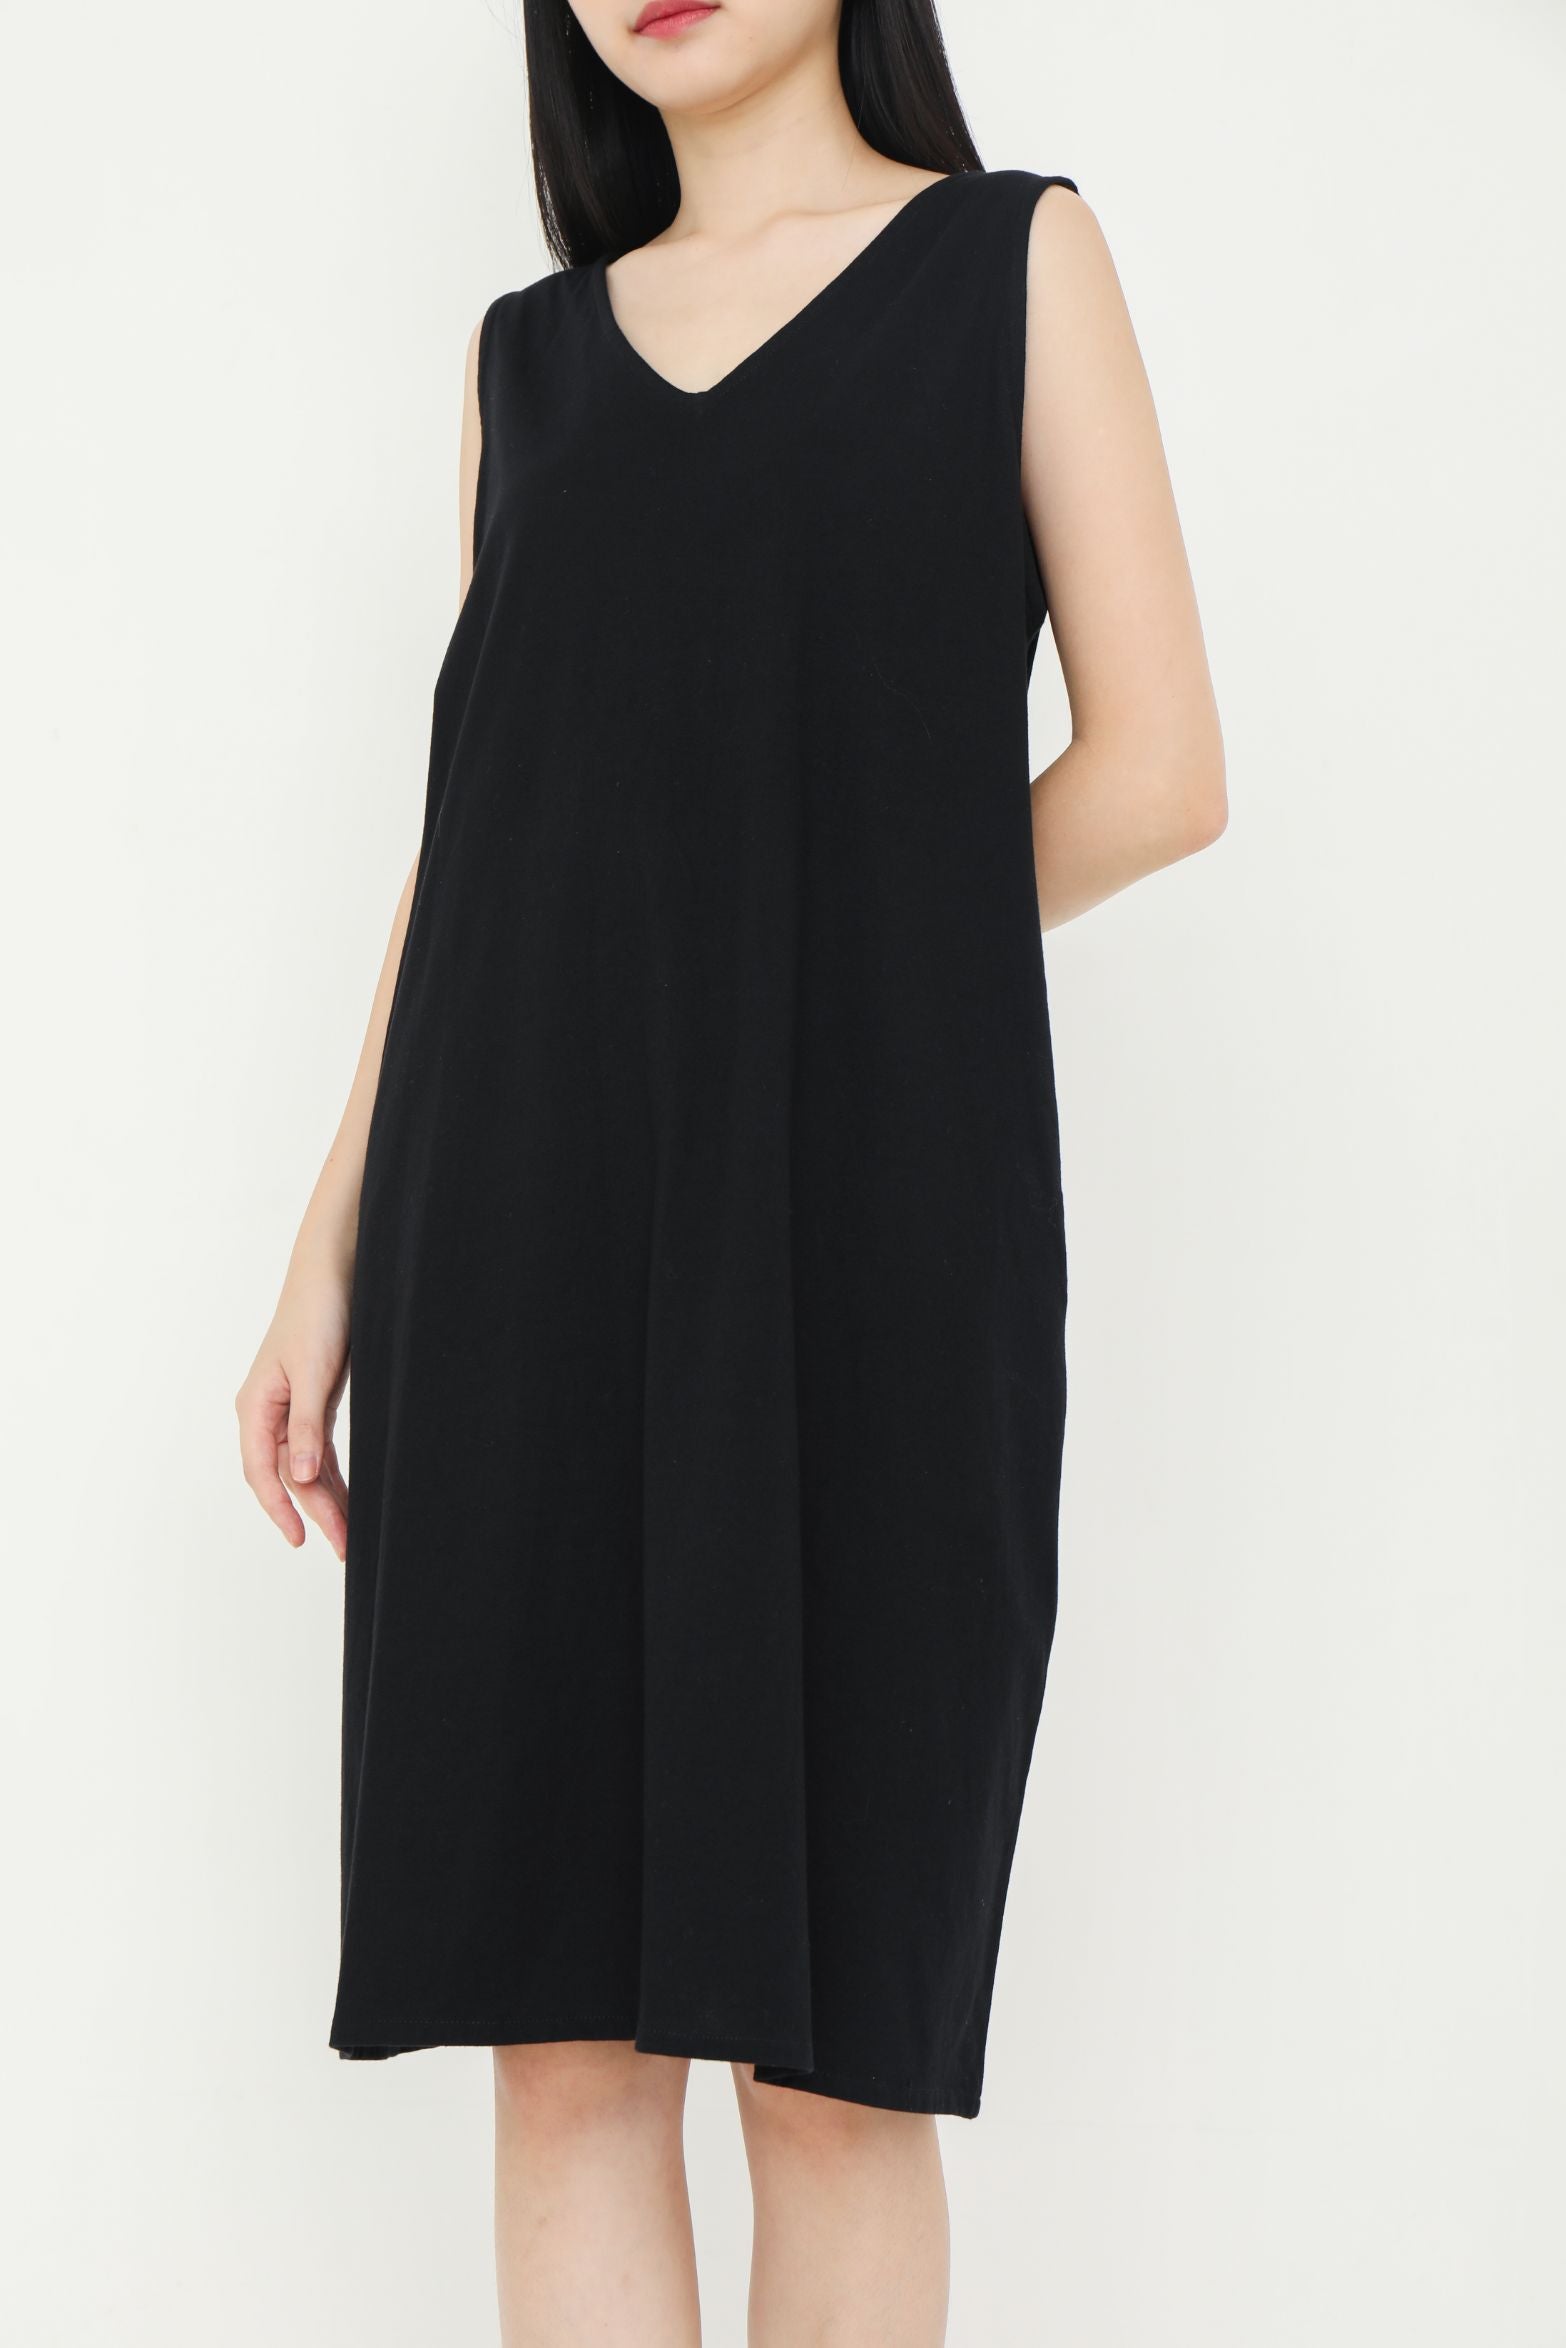 Reversible Sleeveless Black Dress